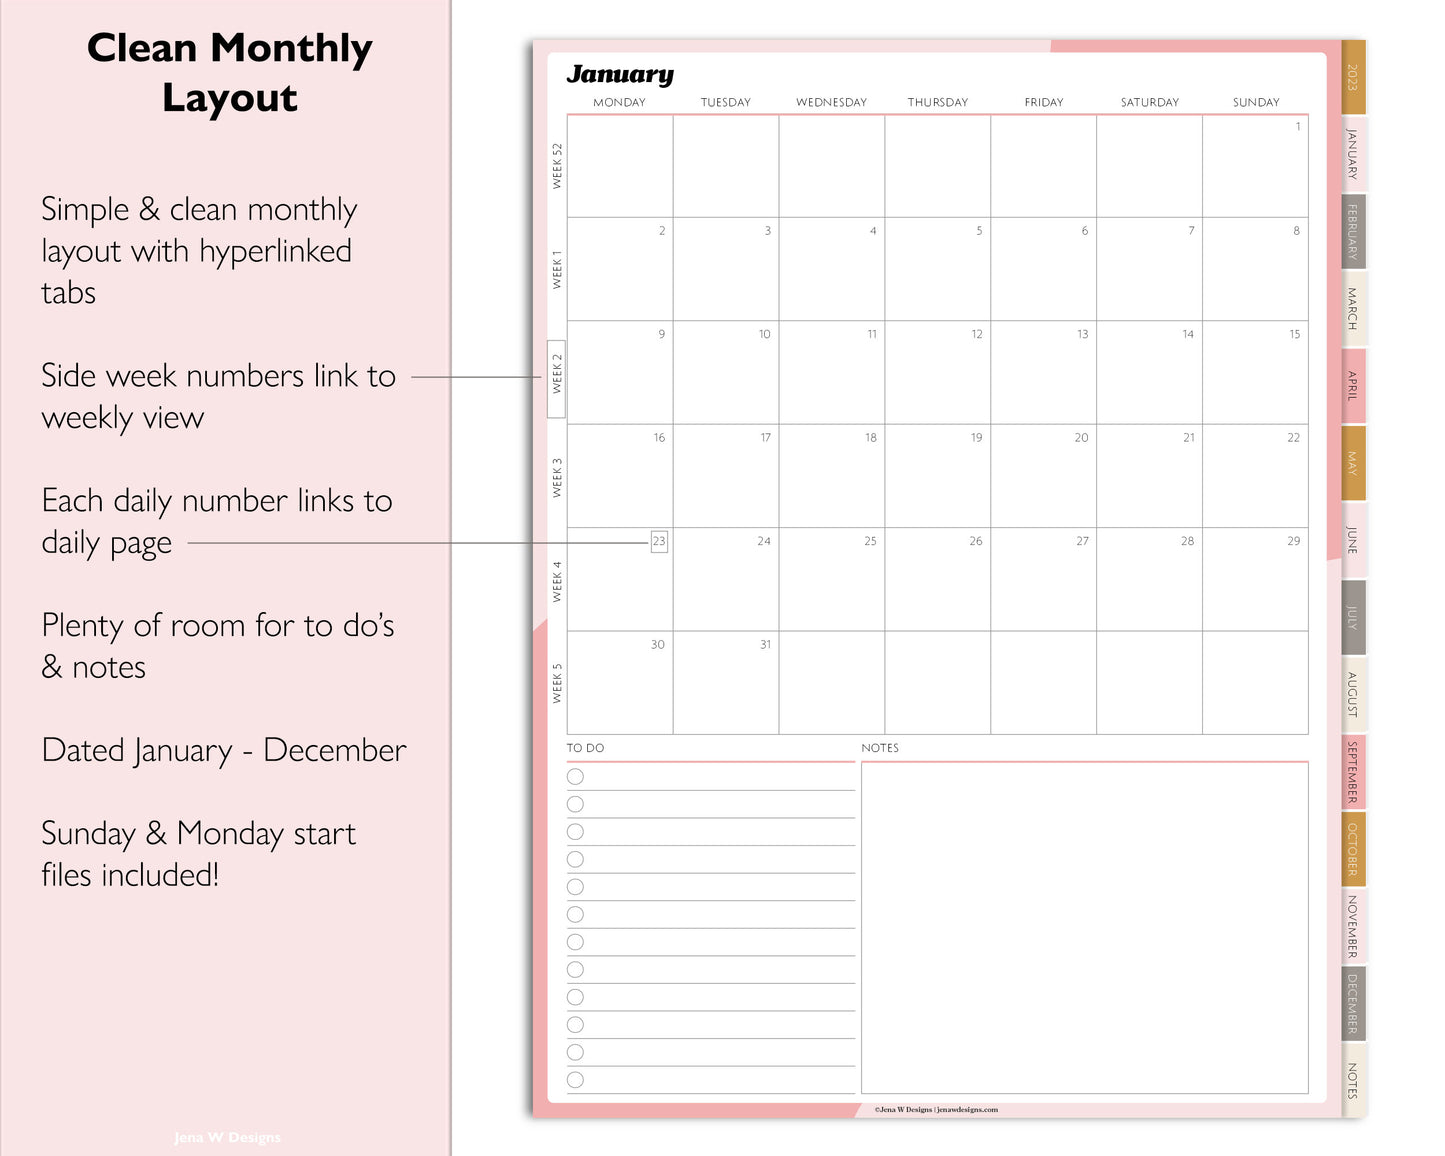 2023 Minimal Modern Daily Planner | Simple Digital Planner | Vertical